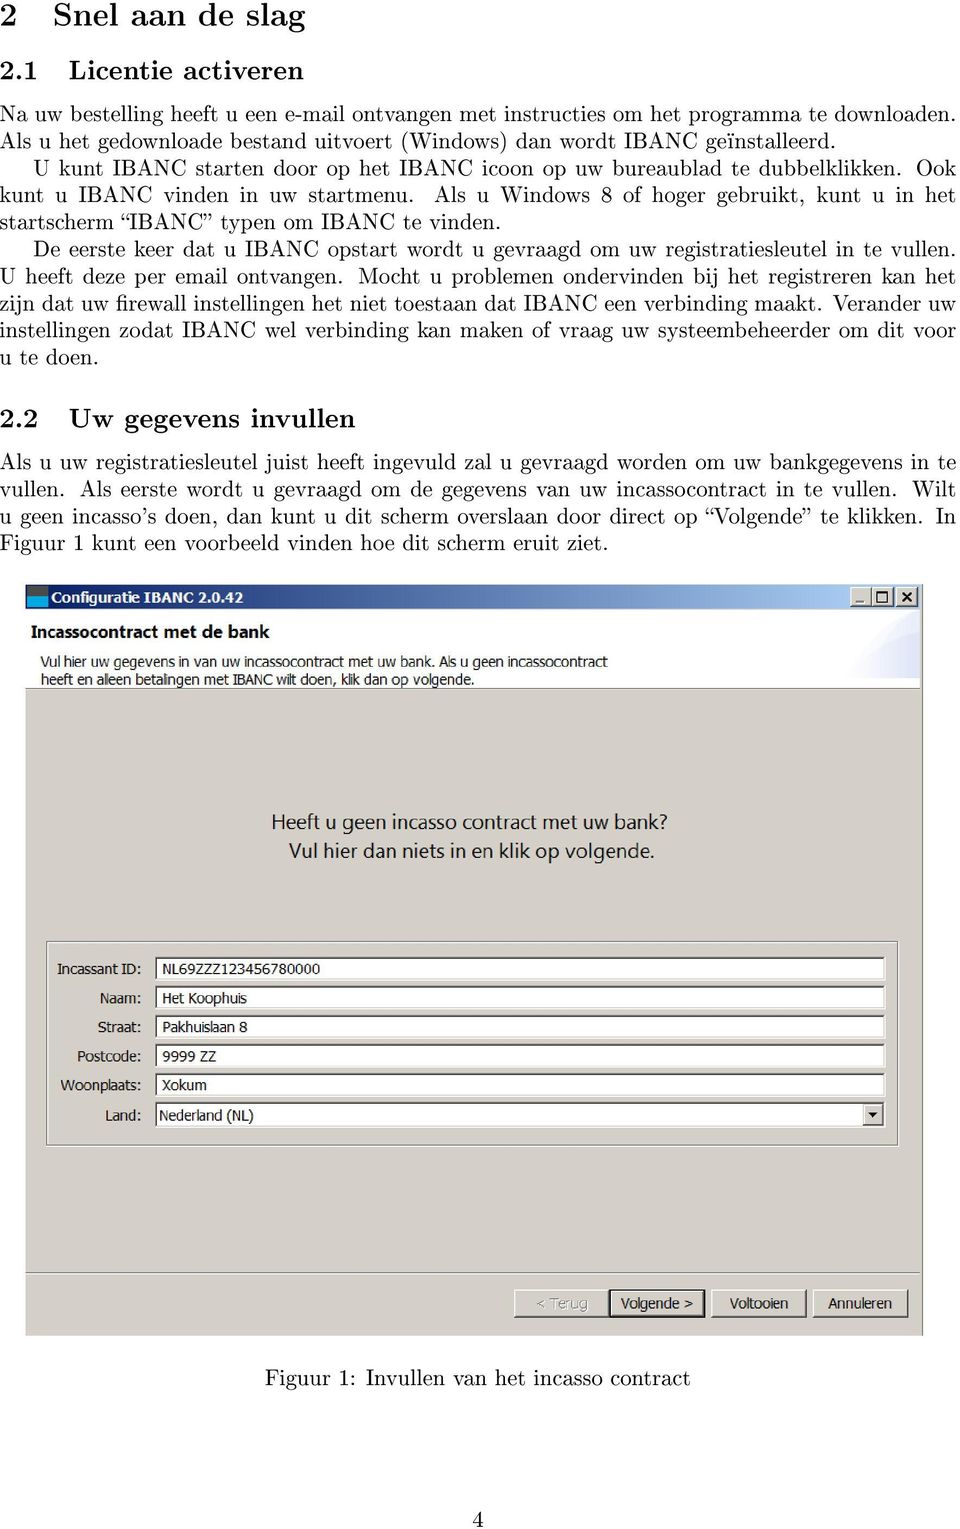 Als u Windows 8 of hoger gebruikt, kunt u in het startscherm IBANC typen om IBANC te vinden. De eerste keer dat u IBANC opstart wordt u gevraagd om uw registratiesleutel in te vullen.